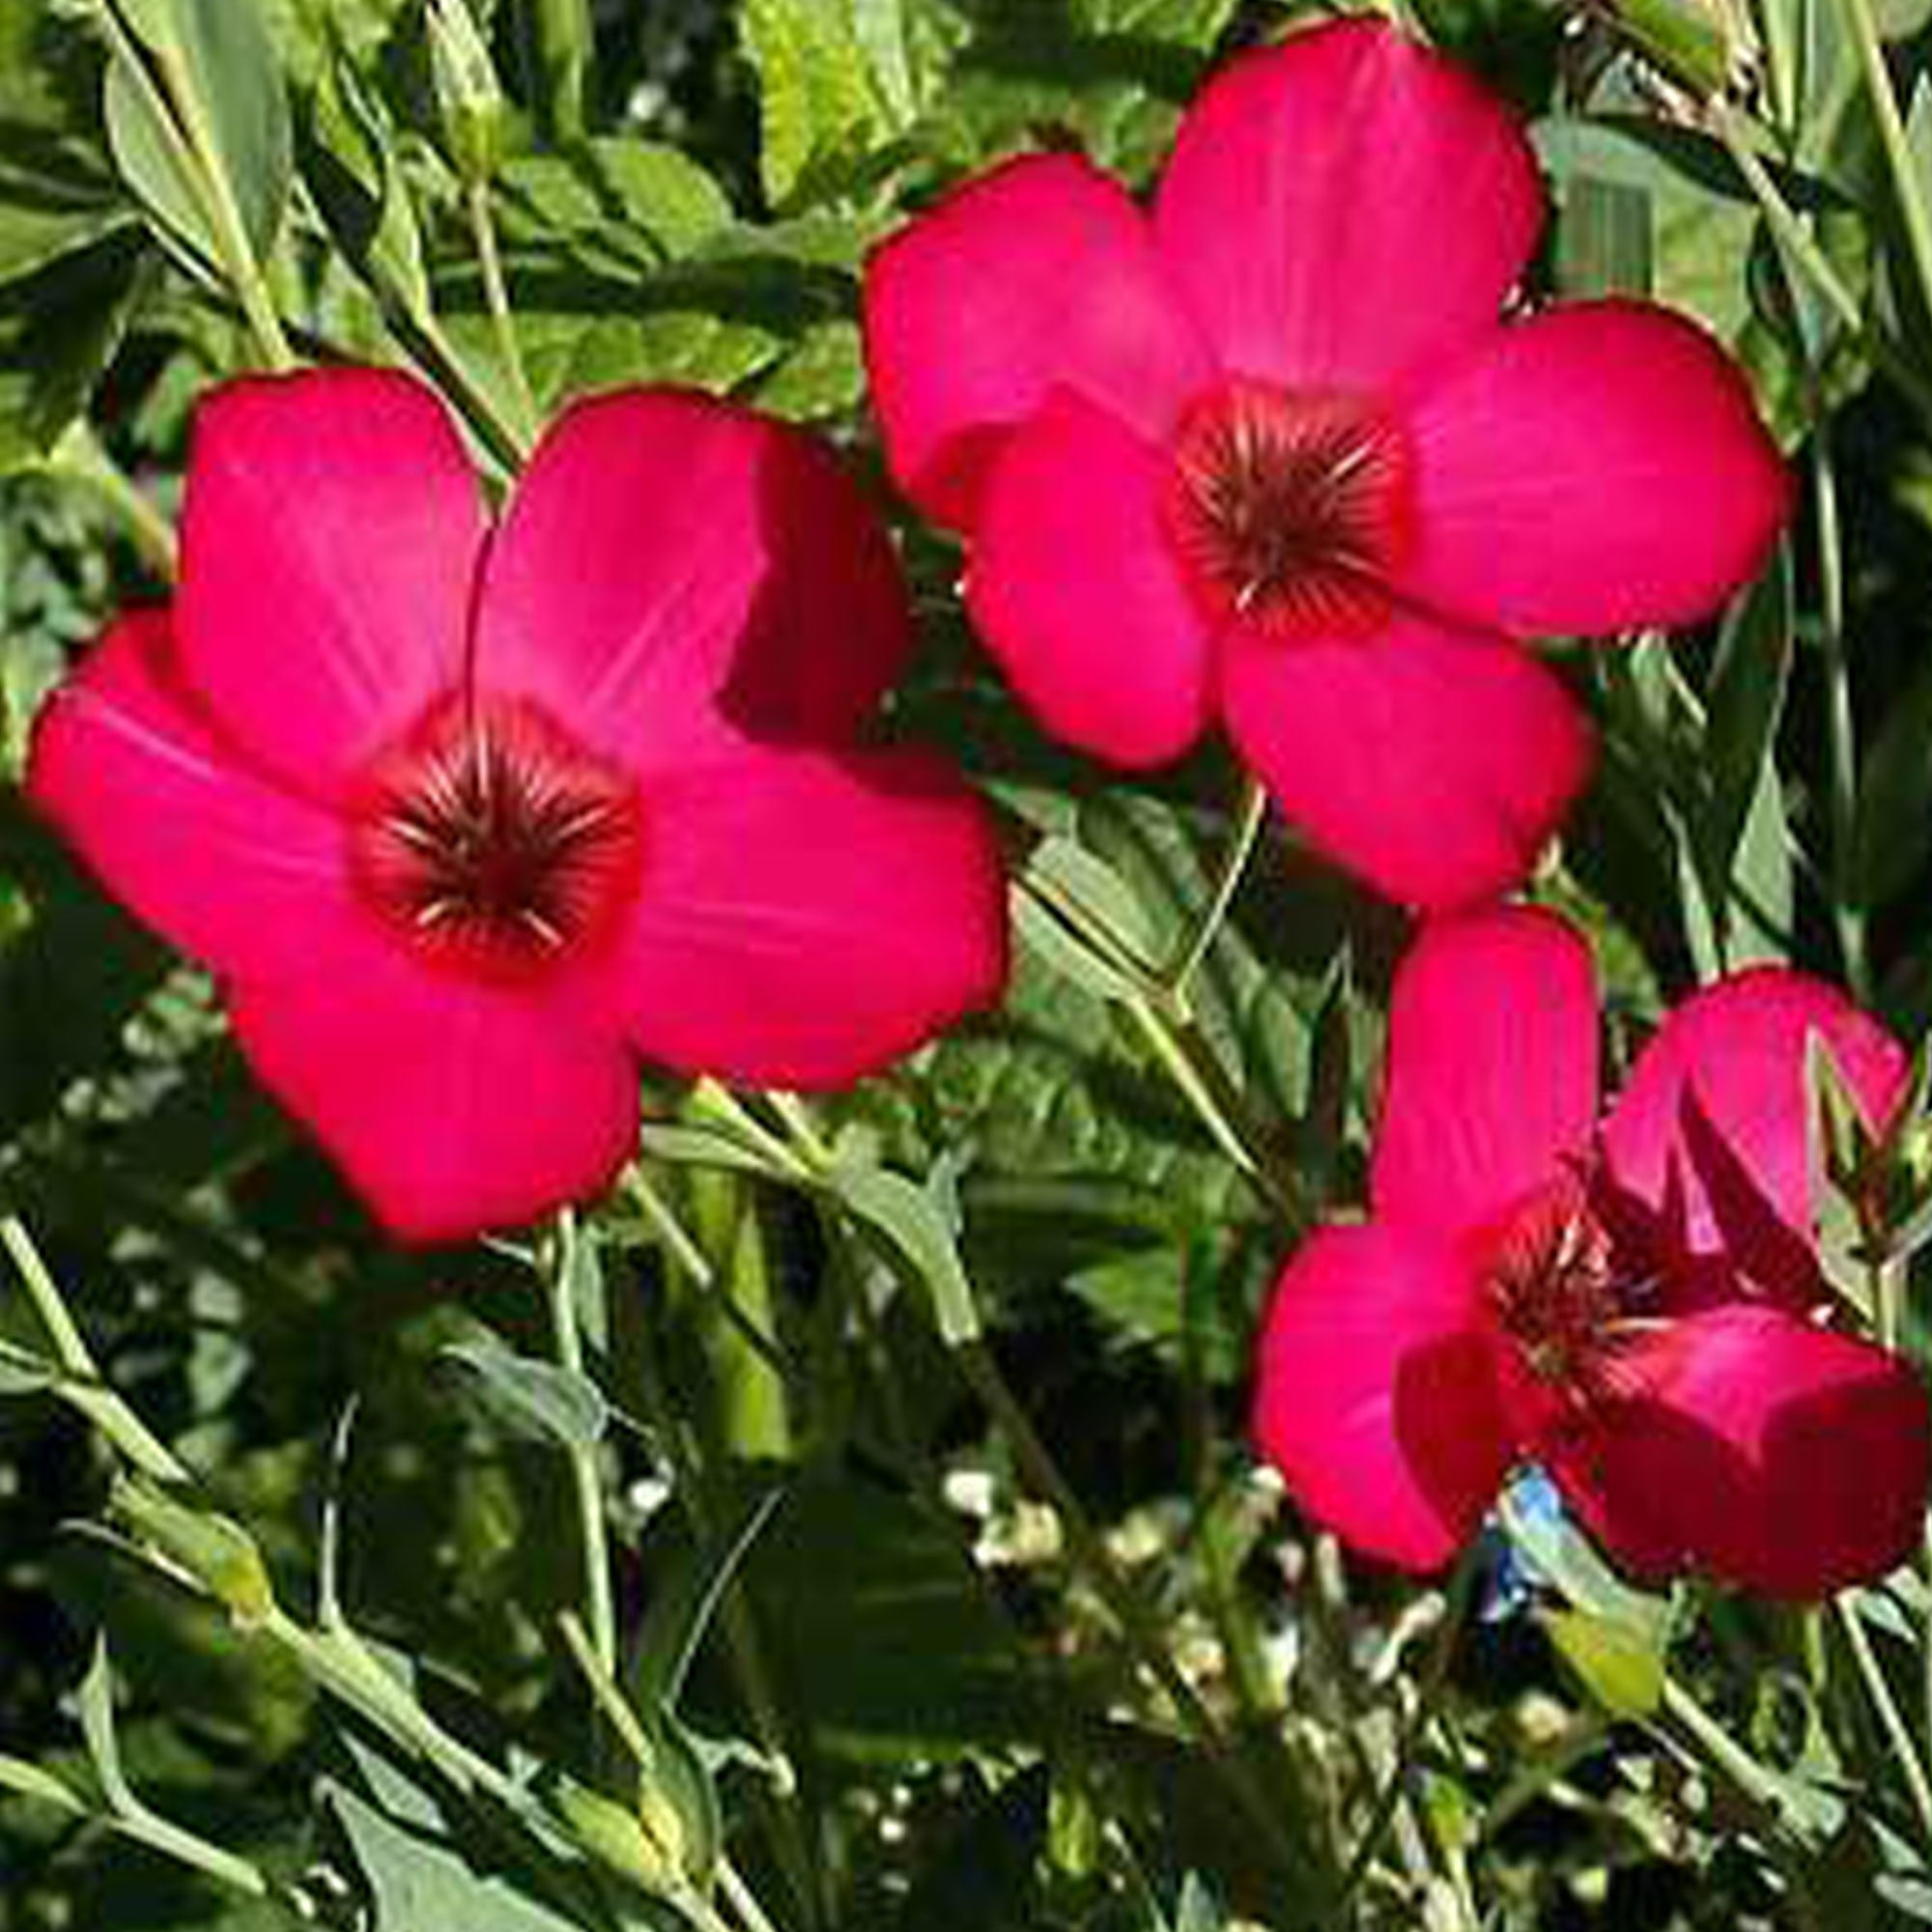 Flax Seeds Bright Eyes Plants Bonsai Grass Seeds Flower Garden Bonsai Organic 